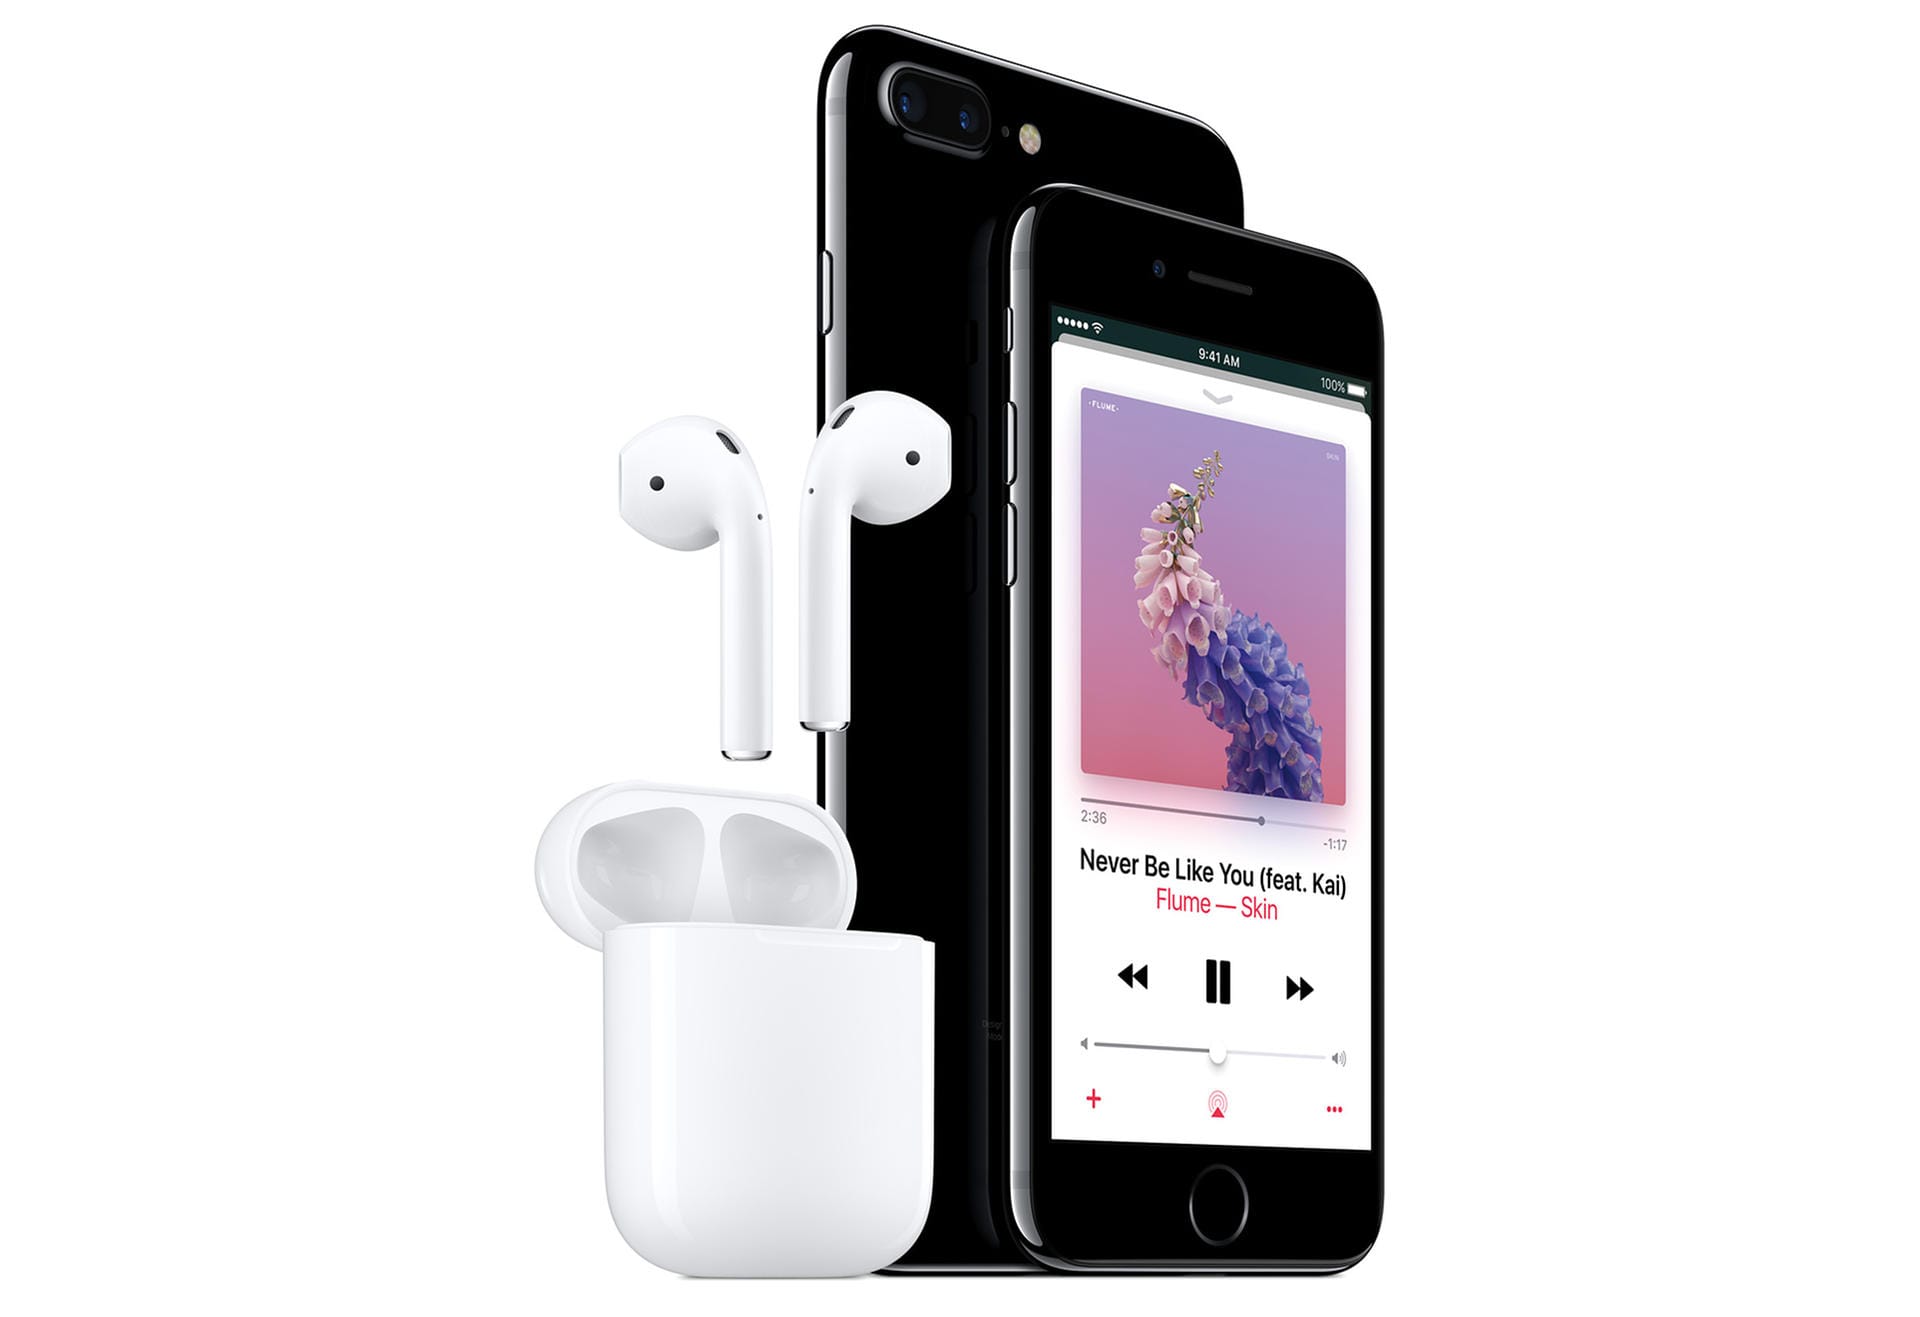 Das iPhone 7 hat keine Klinkenbuchse mehr, Kopfhörer müssen entweder drahtlos oder an der Lightning-Schnittstelle angeschlossen werden. Apple legt passende Kopfhörer bei, dazu wird ein Lightning-Klinken-Adapter mitgeliefert.